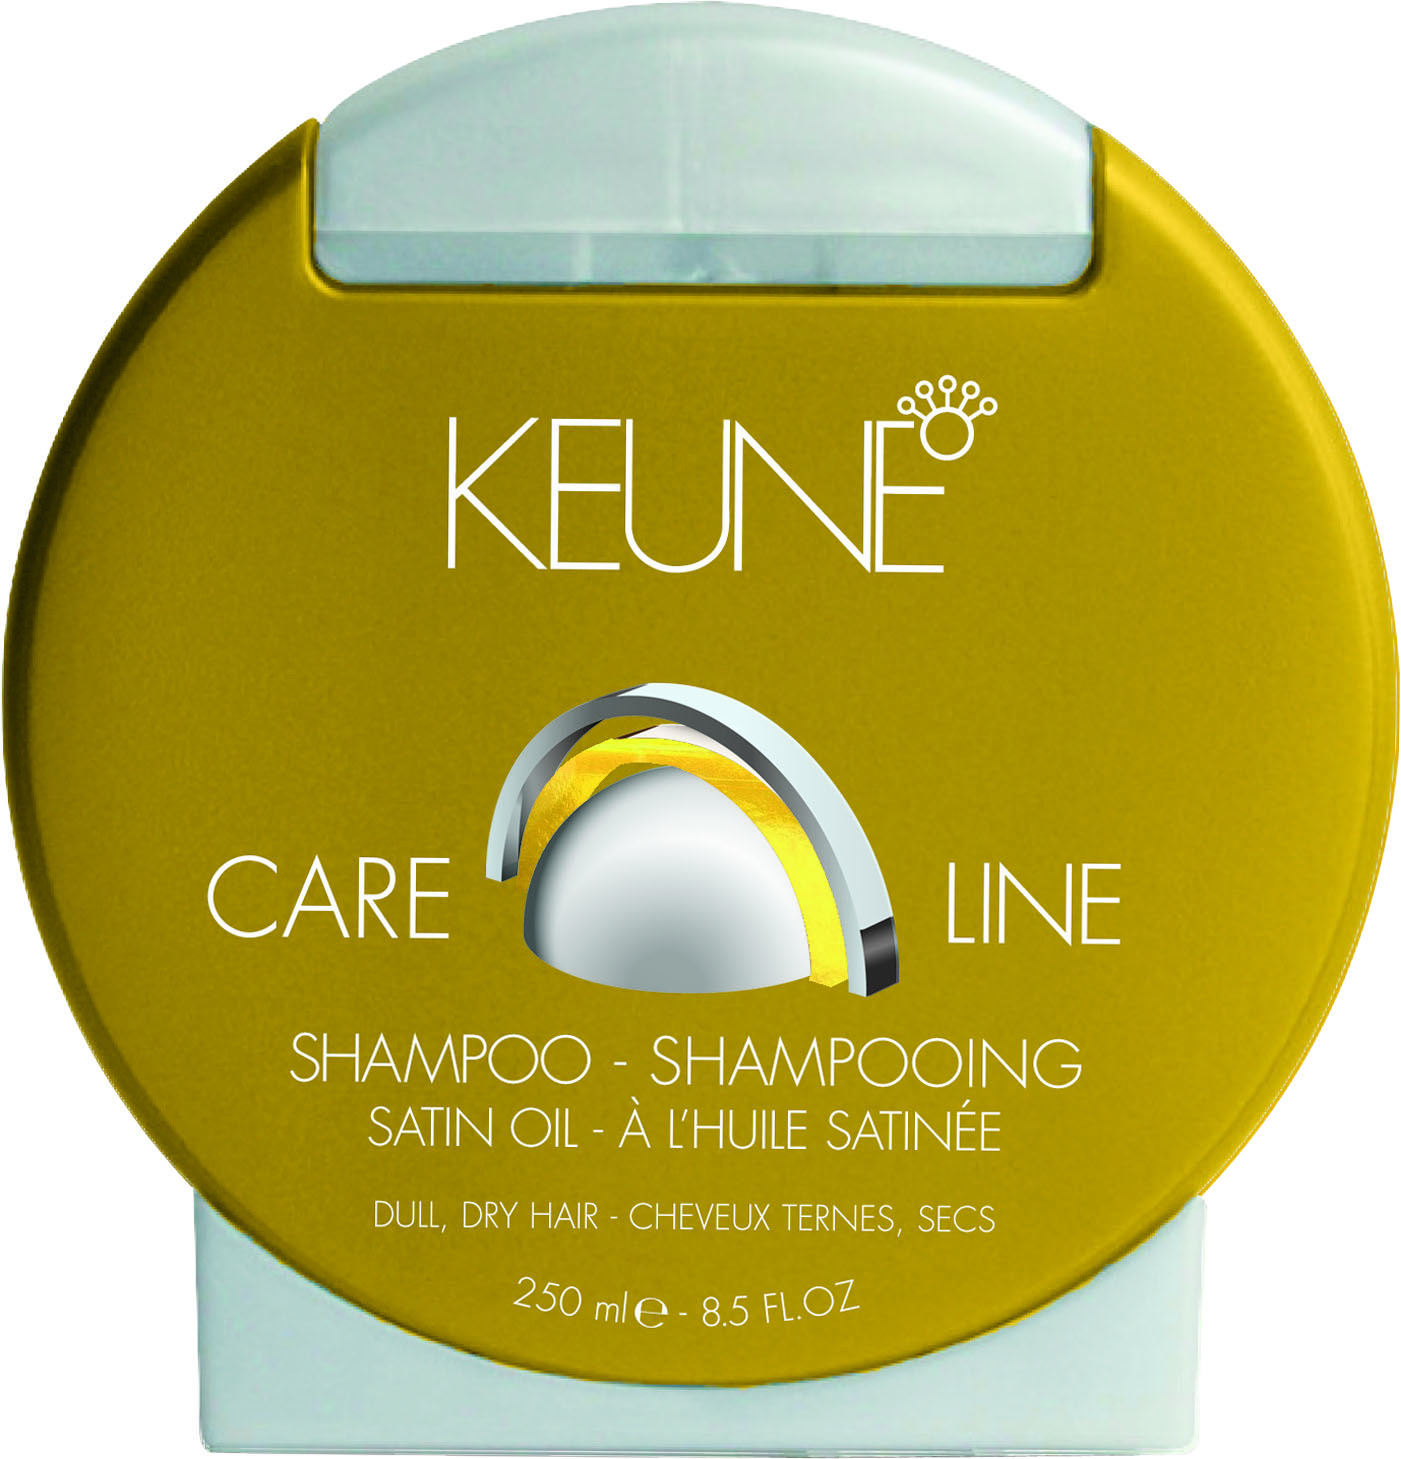 Keune Satin Oil Shampoo 250ml